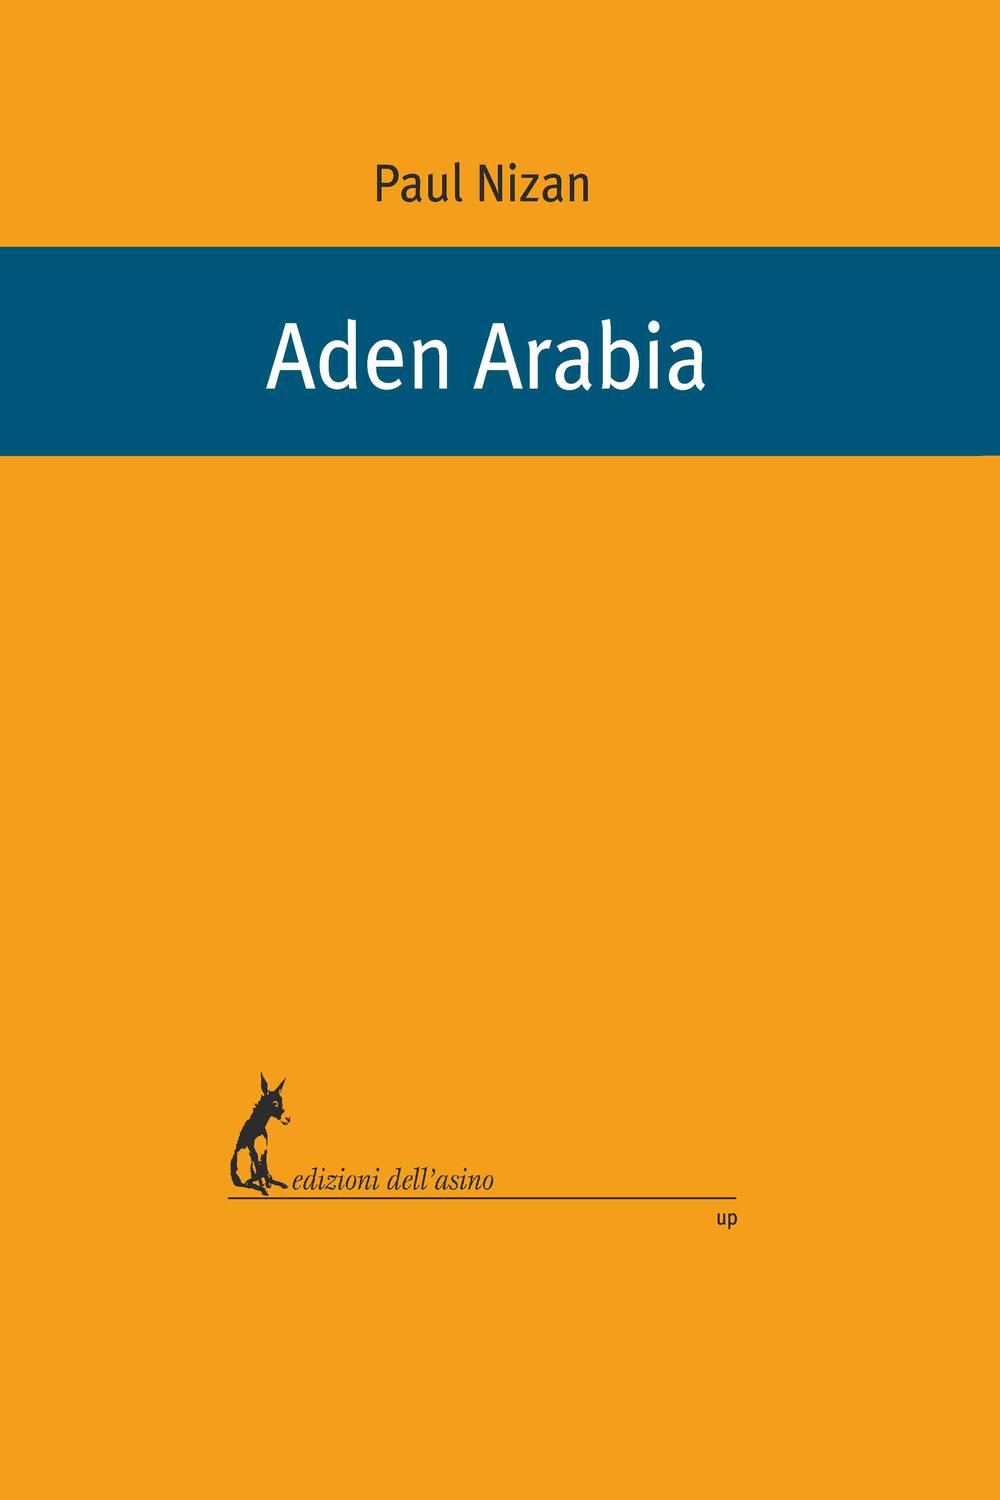 Aden Arabia - Paul Nizan, Daria Menicanti